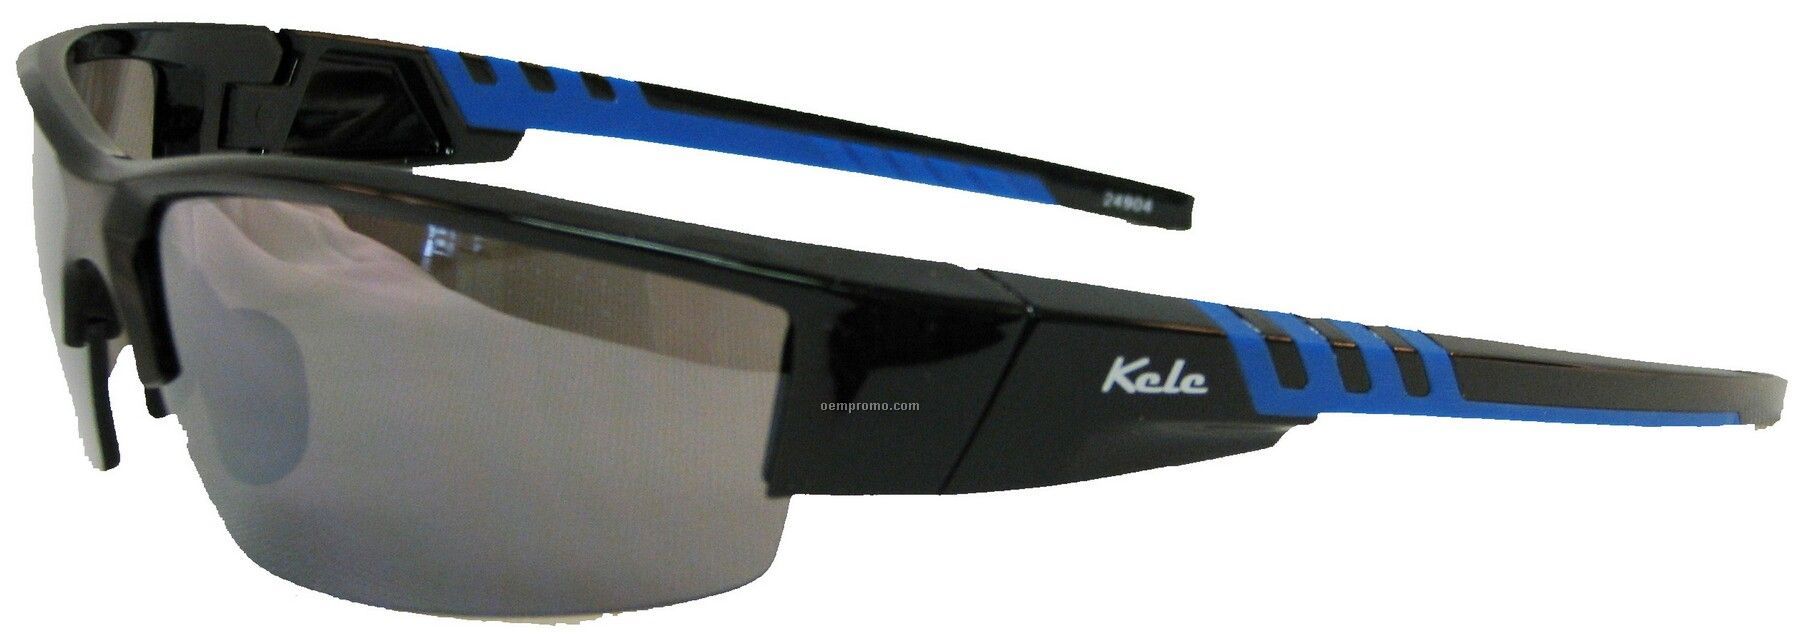 Lunette Sunglasses - Gray Lens W/Black & Blue Frame